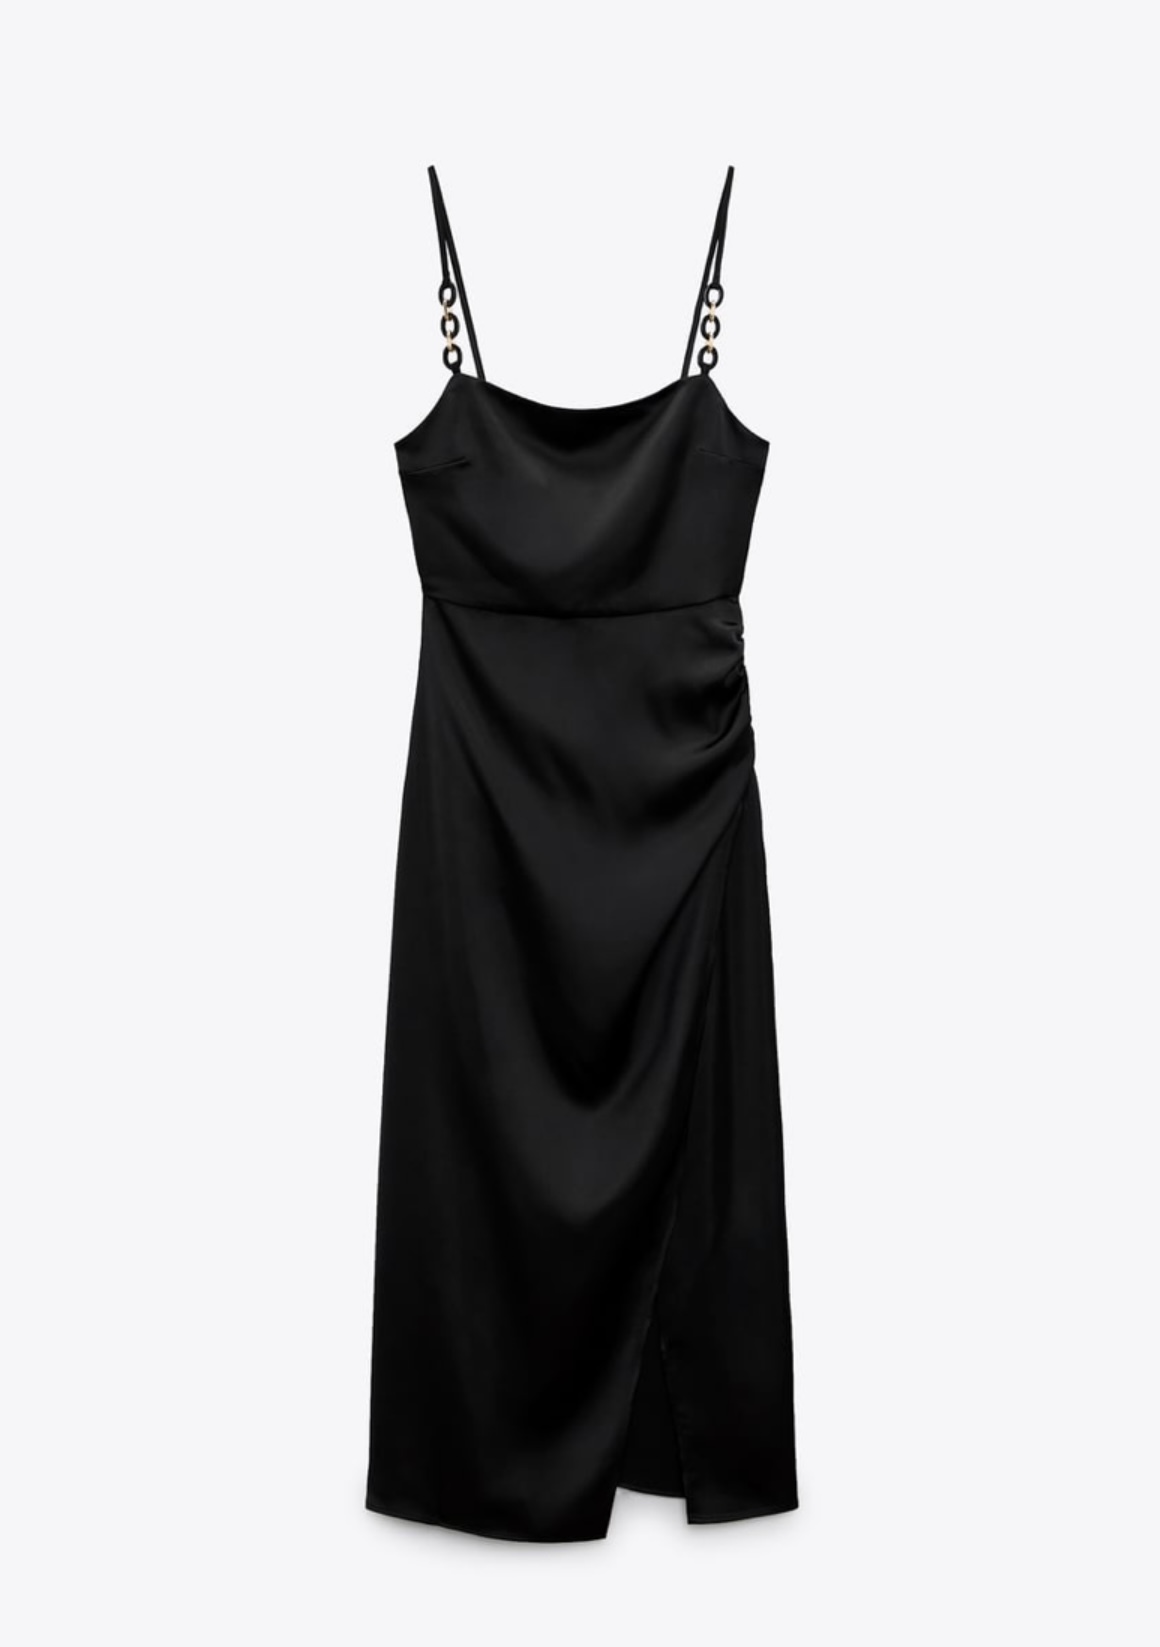 Vestido lencero negro de Zara (35,95 euros).